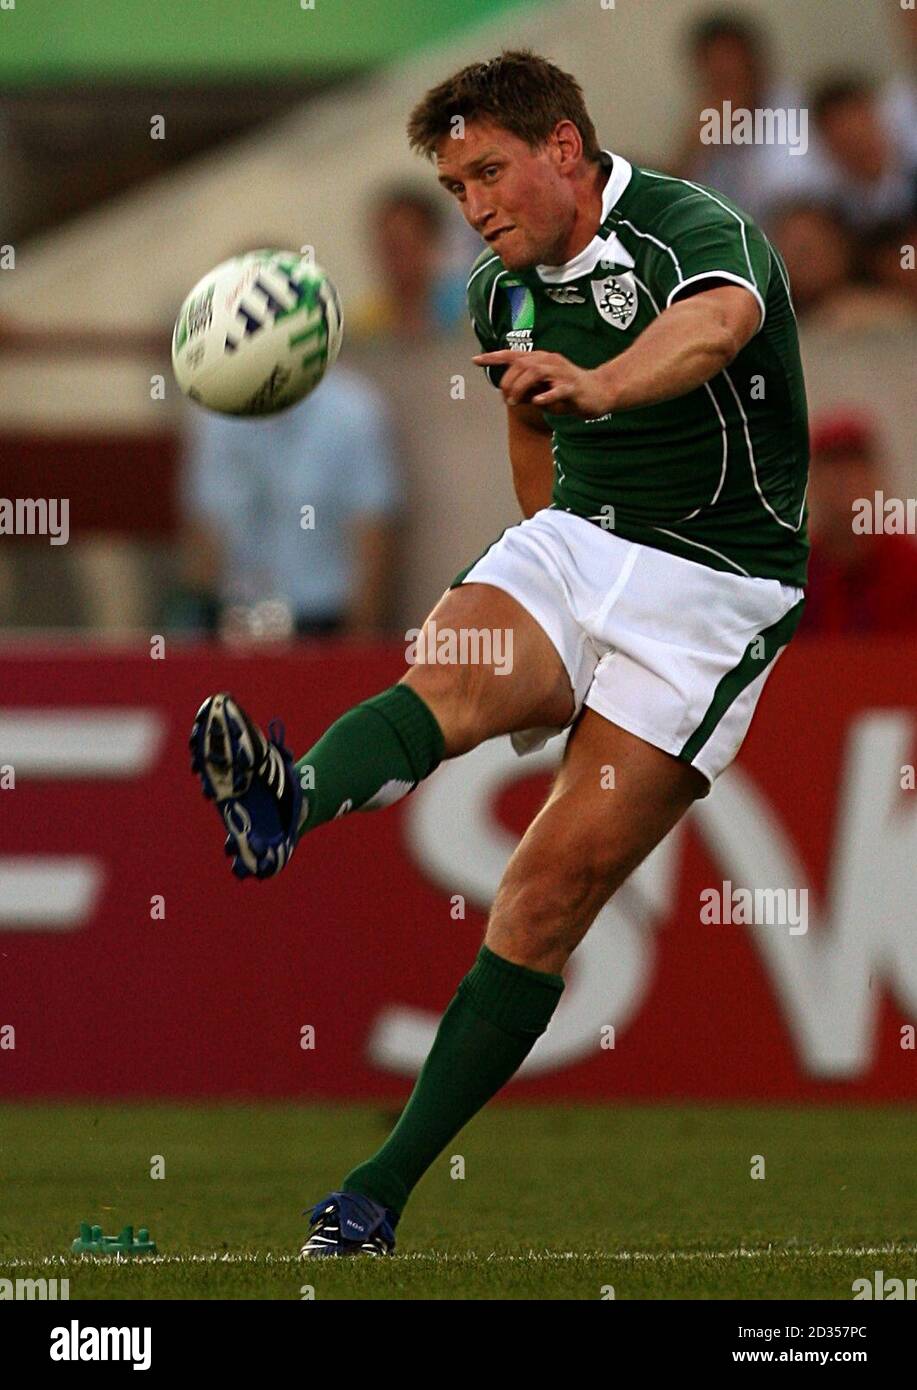 Ireland's Ronan O'Gara scores the first conversion of the game. Stock Photo